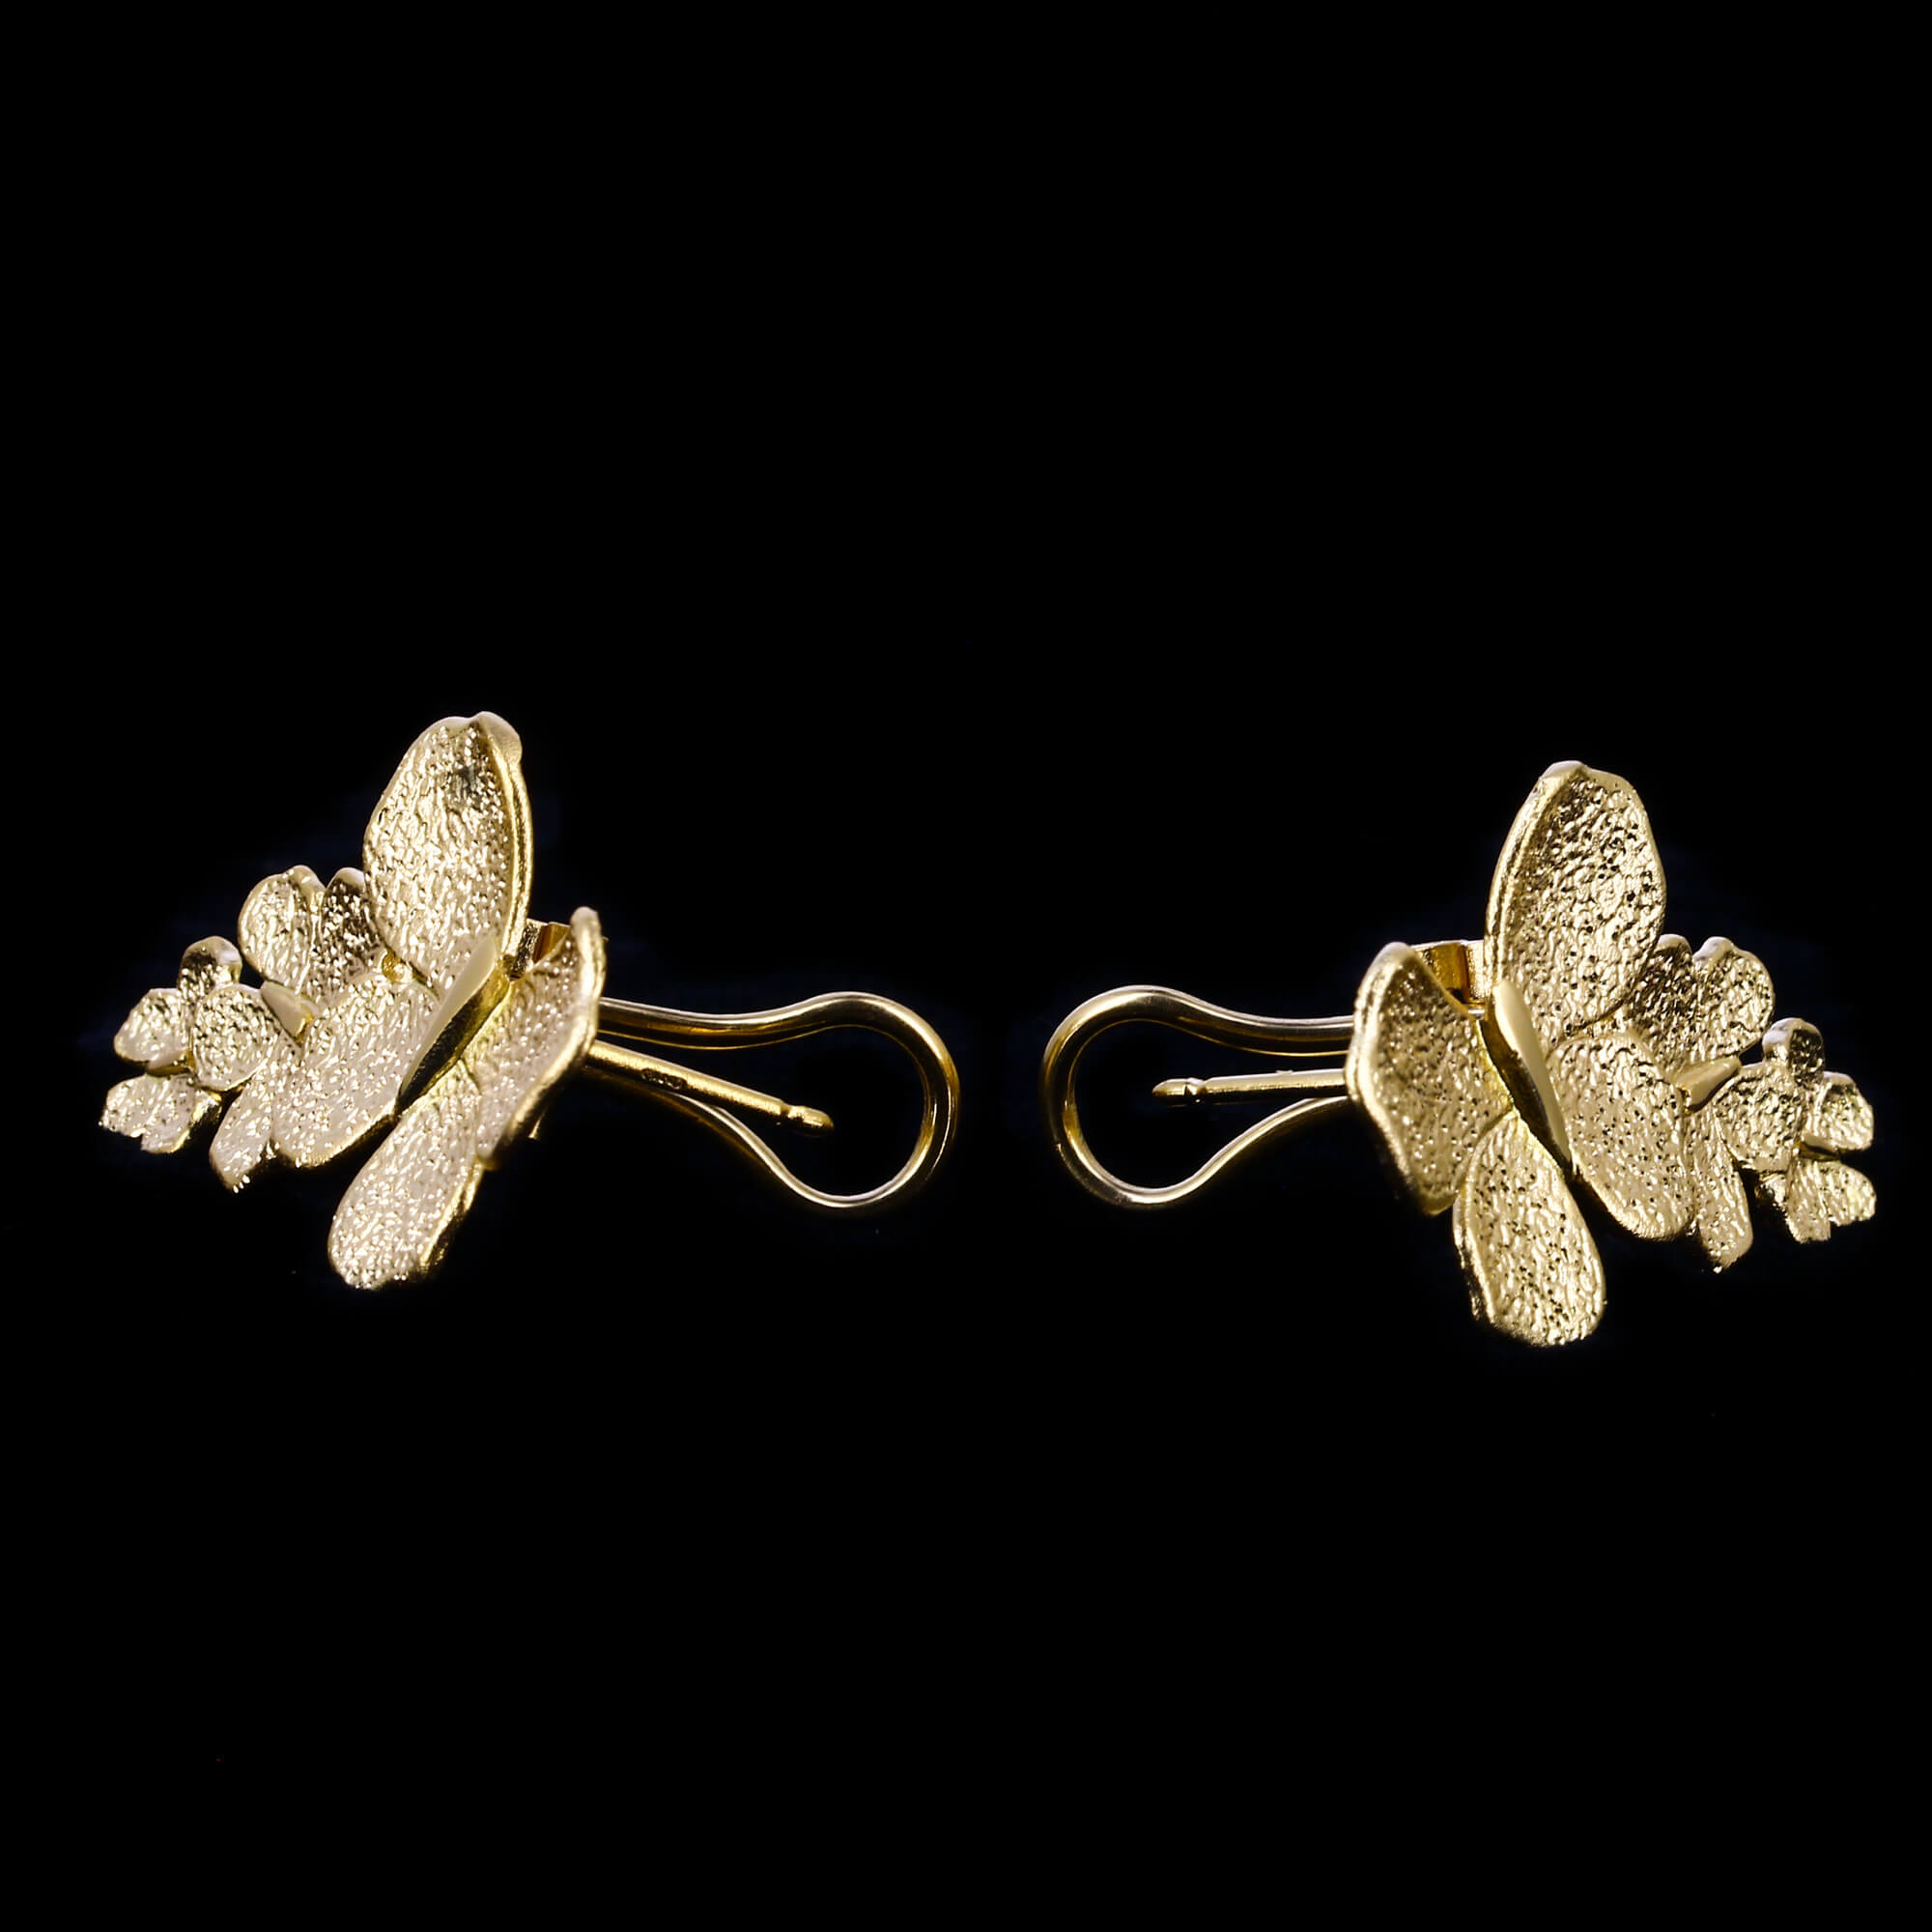 Gilt eye catcher butterfly earrings